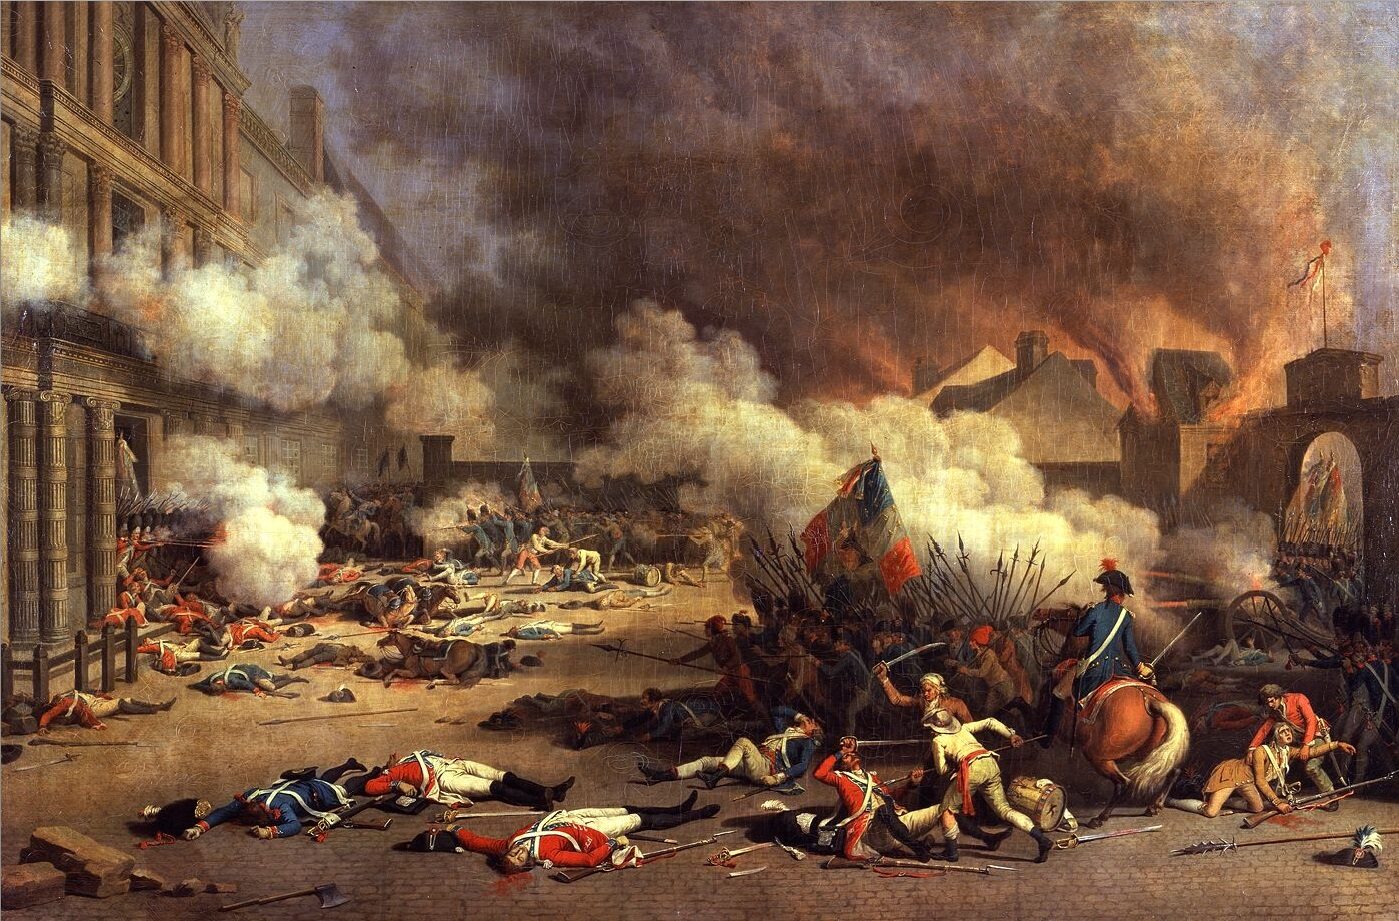 Rewolucja Francuska Przyczyny I Skutki Rewolucja francuska